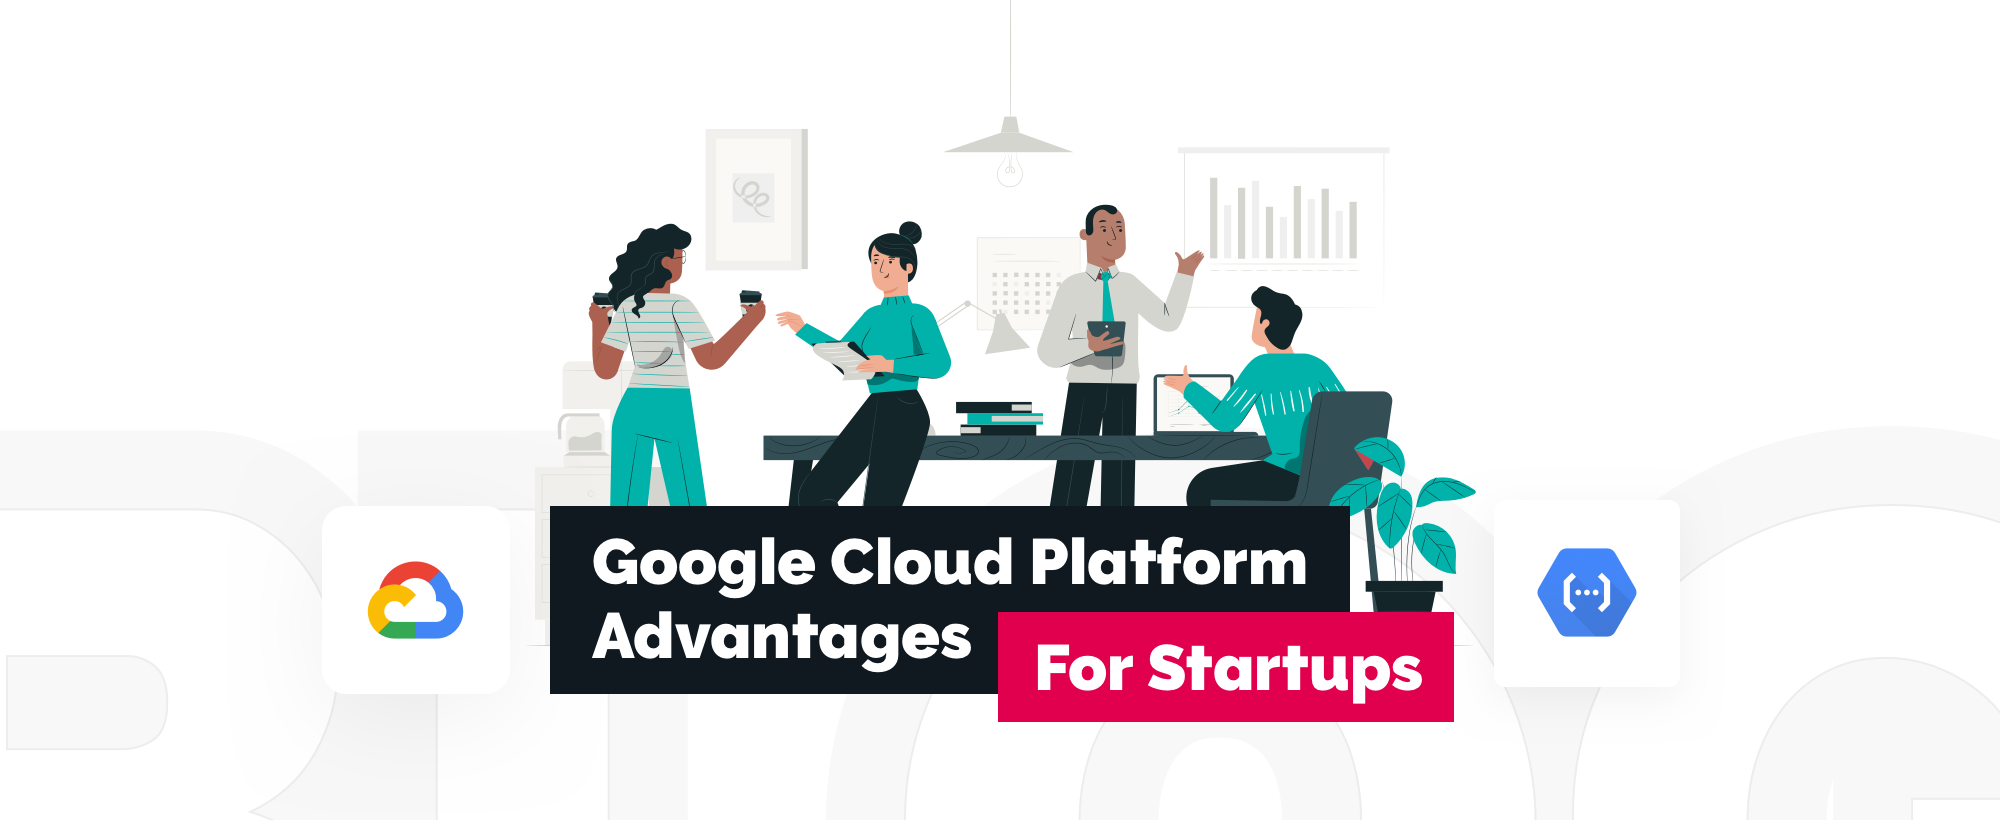 Why GCP Is The Best Cloud Platform for Startups? 5 Google Cloud Platform Advantages